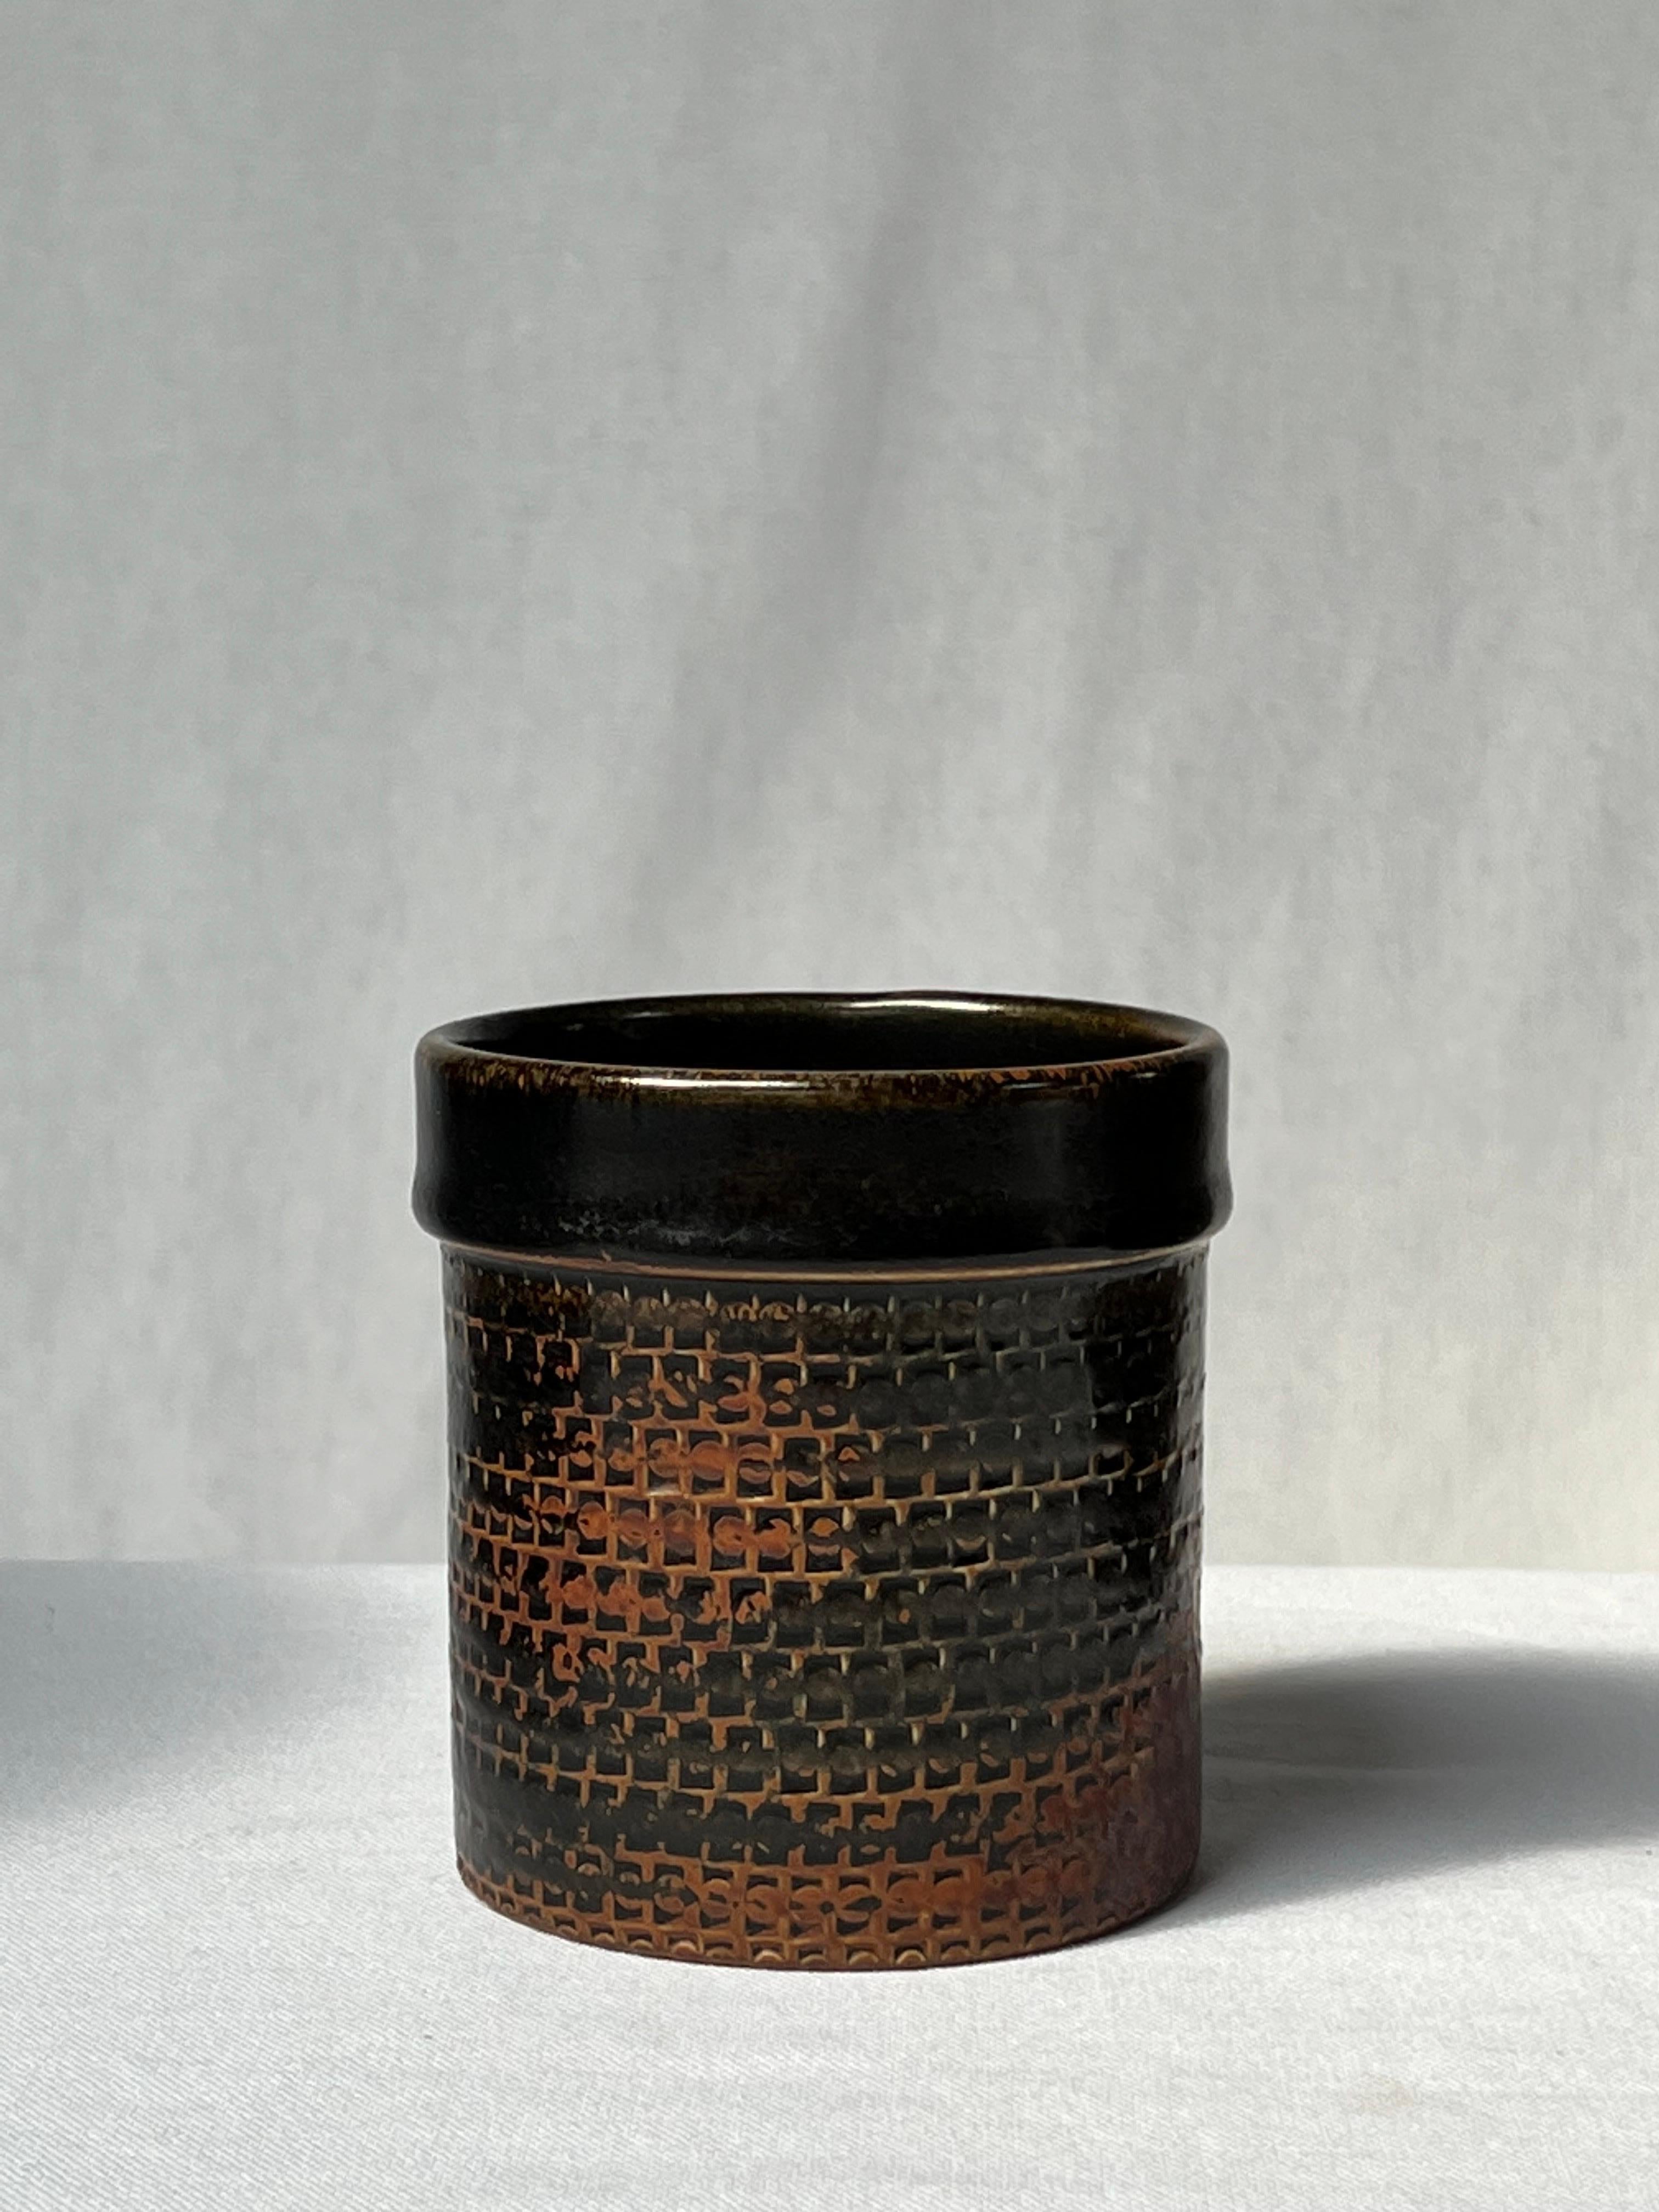 Schwarz glasierte Vase des schwedischen Meisterkeramikers Stig Lindberg. Von hellbraun an den Rändern bis dunkelschwarz. Es handelt sich um die japanische Tenmoku-Glasur, die auch von den alten Chinesen verwendet wurde. Elegante Details und schönes